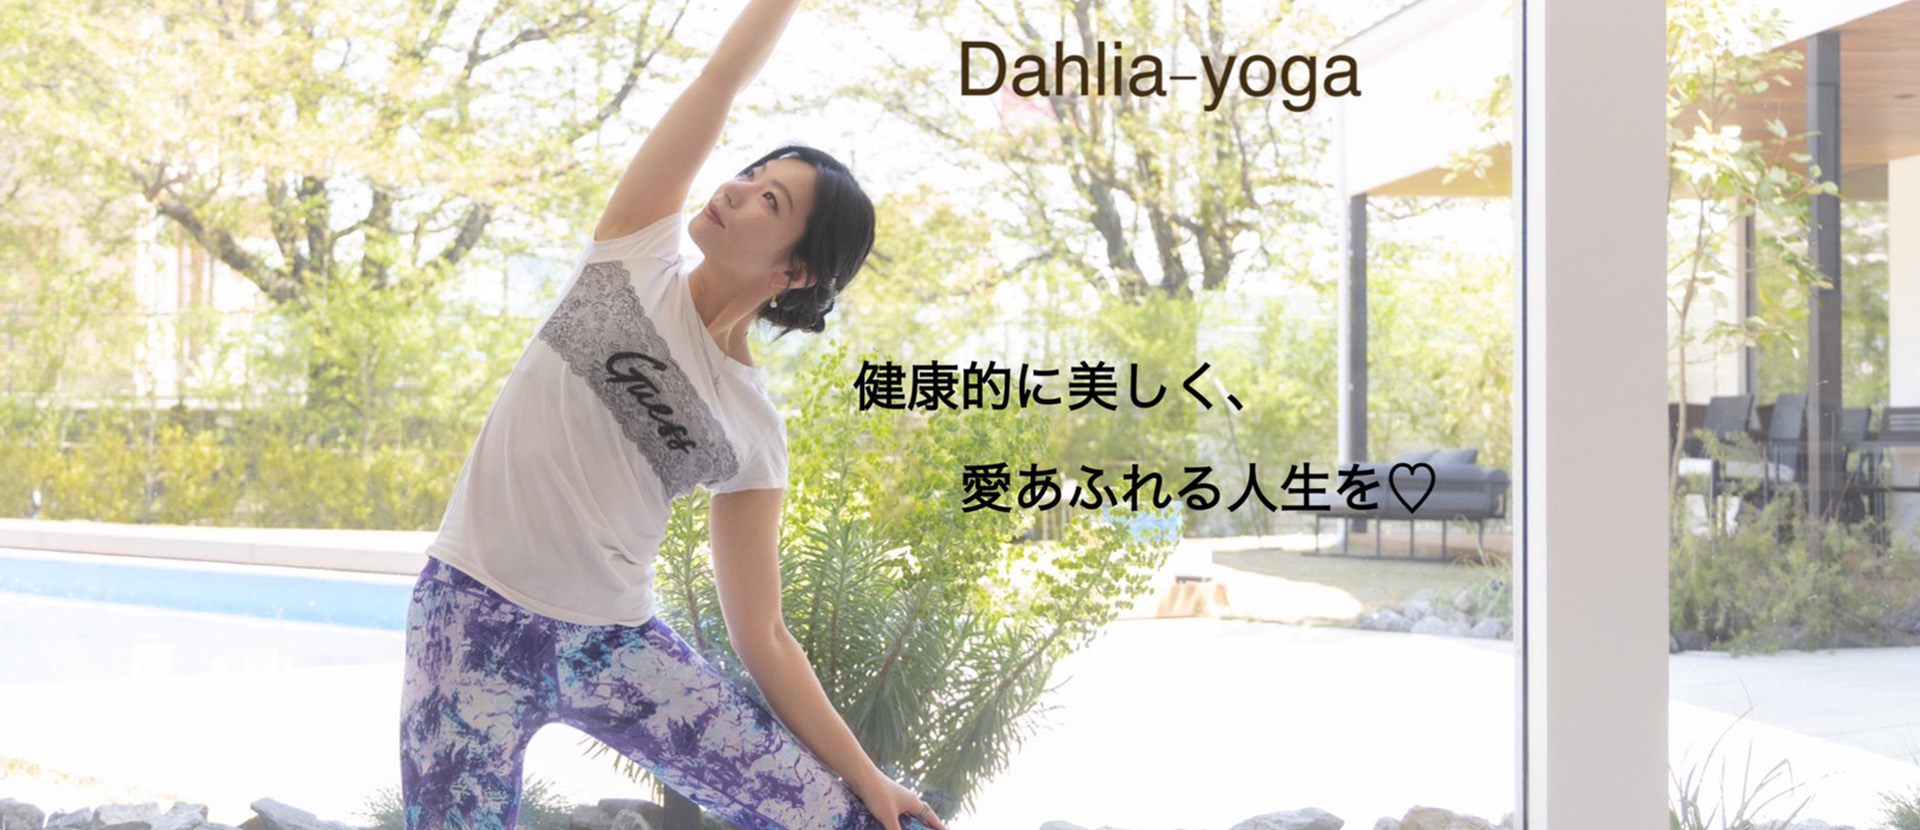 Dahlia-yoga